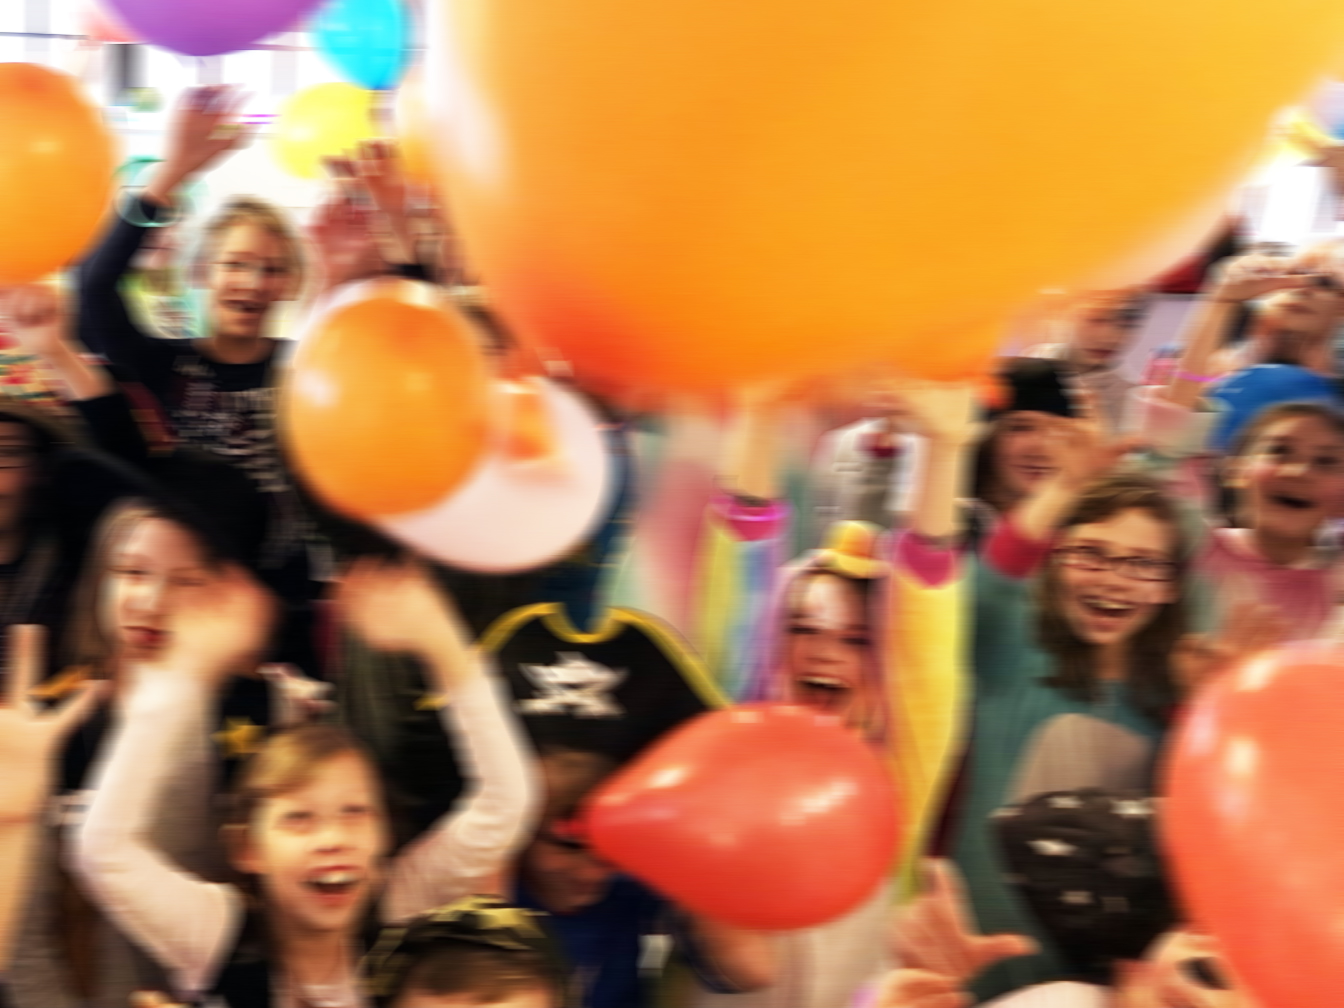 Kostümierte Kinder, die mit Luftballons spielen und Karneval feiern